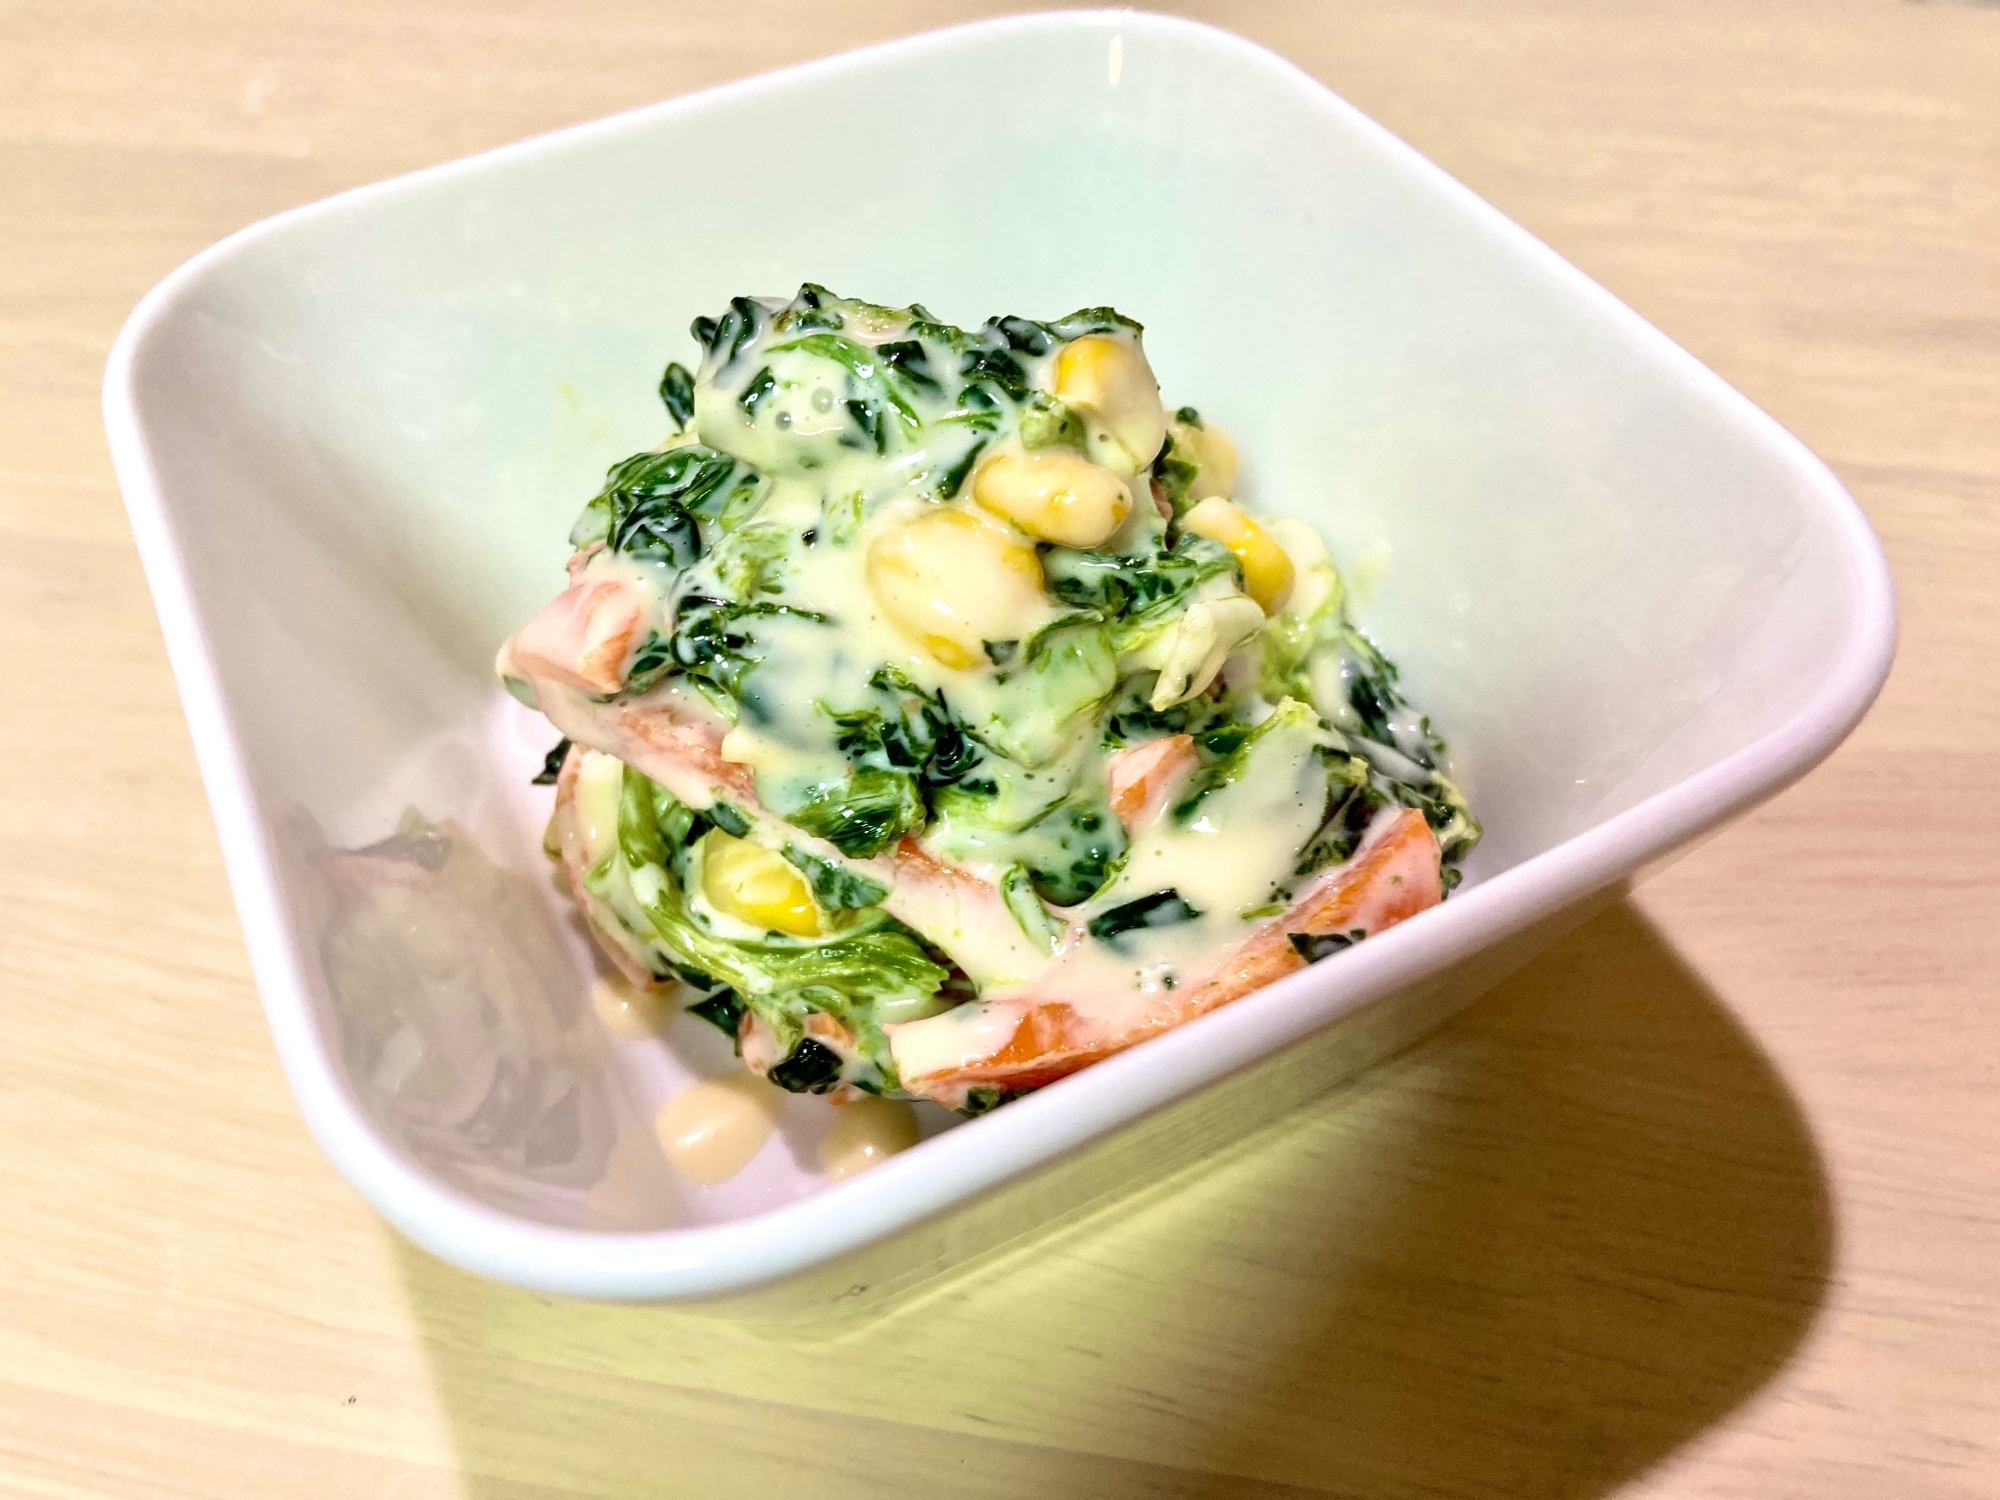 ⭐簡単副菜⭐冷凍野菜食べきりコールスロー風サラダ